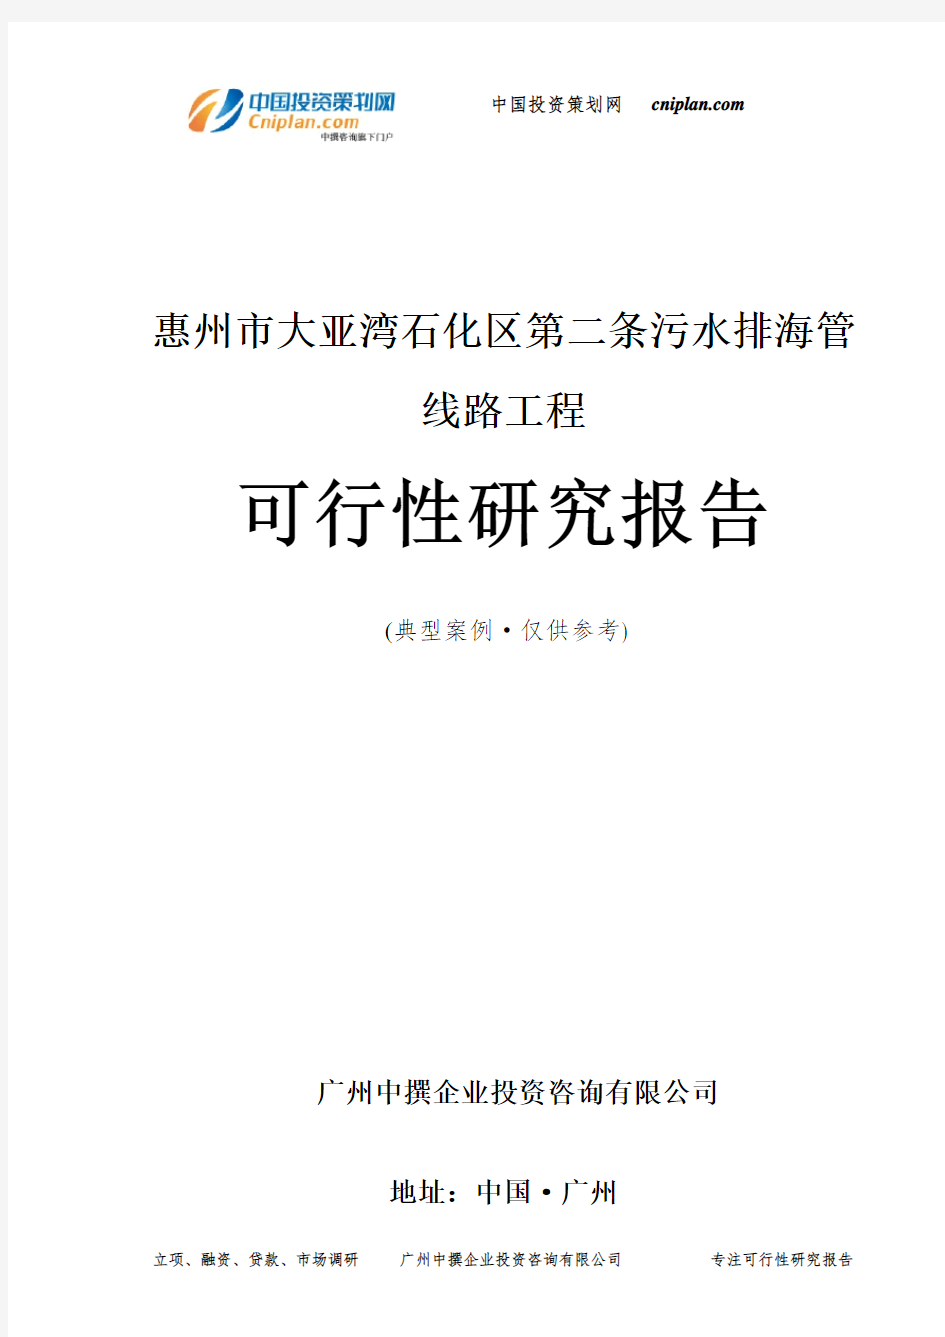 惠州市大亚湾石化区第二条污水排海管线路工程可行性研究报告-广州中撰咨询